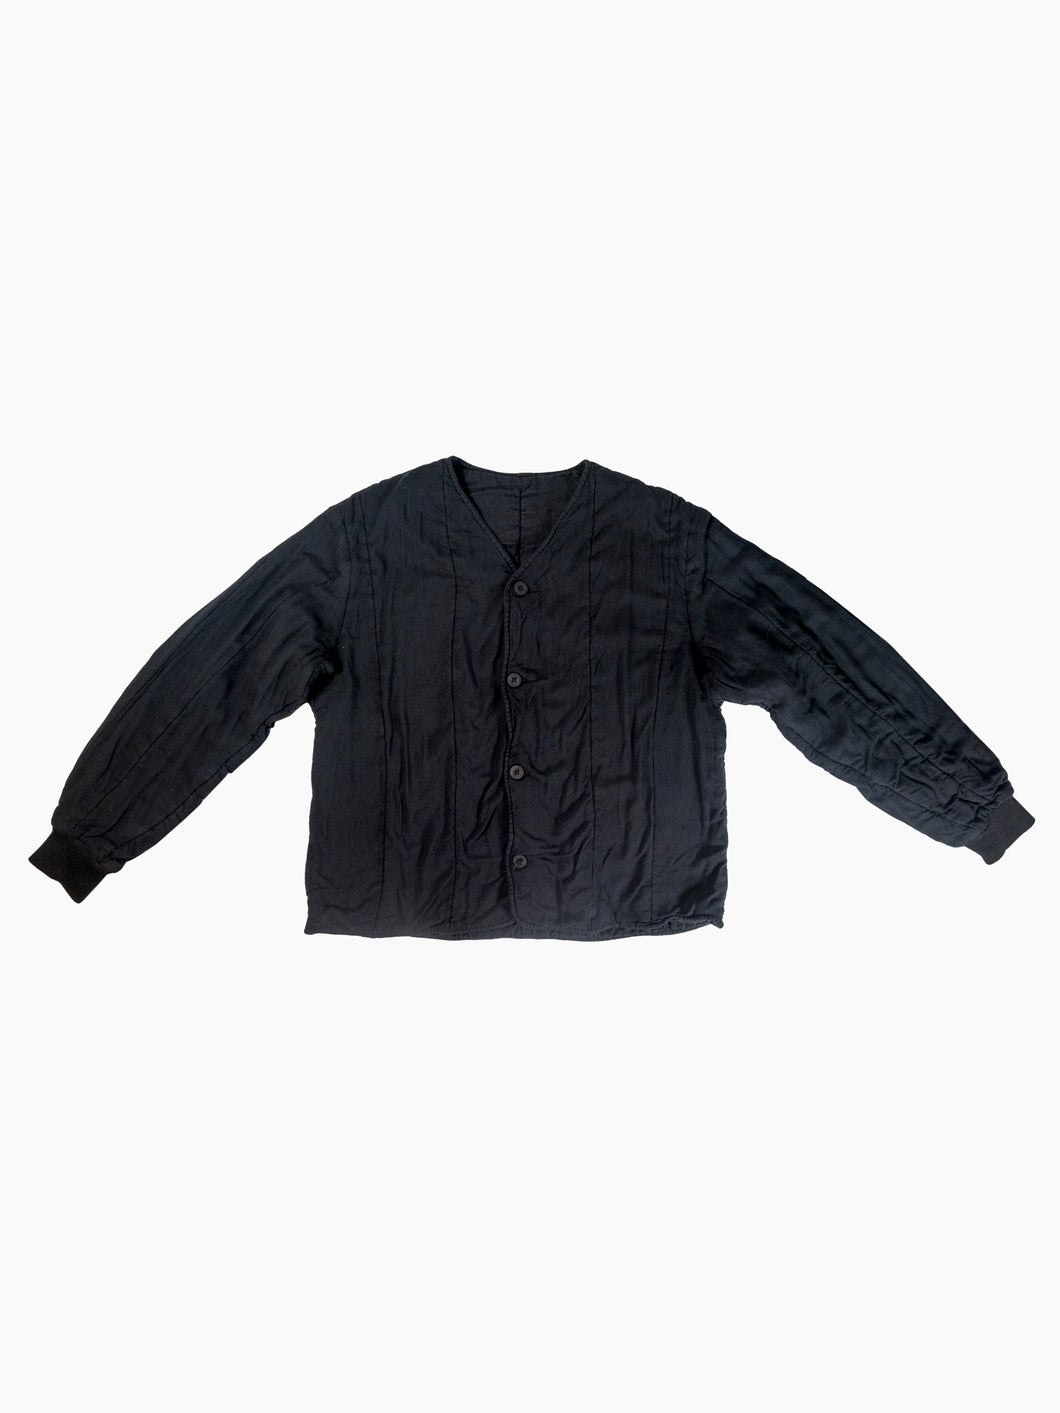 Vintage Black Quilt Jacket